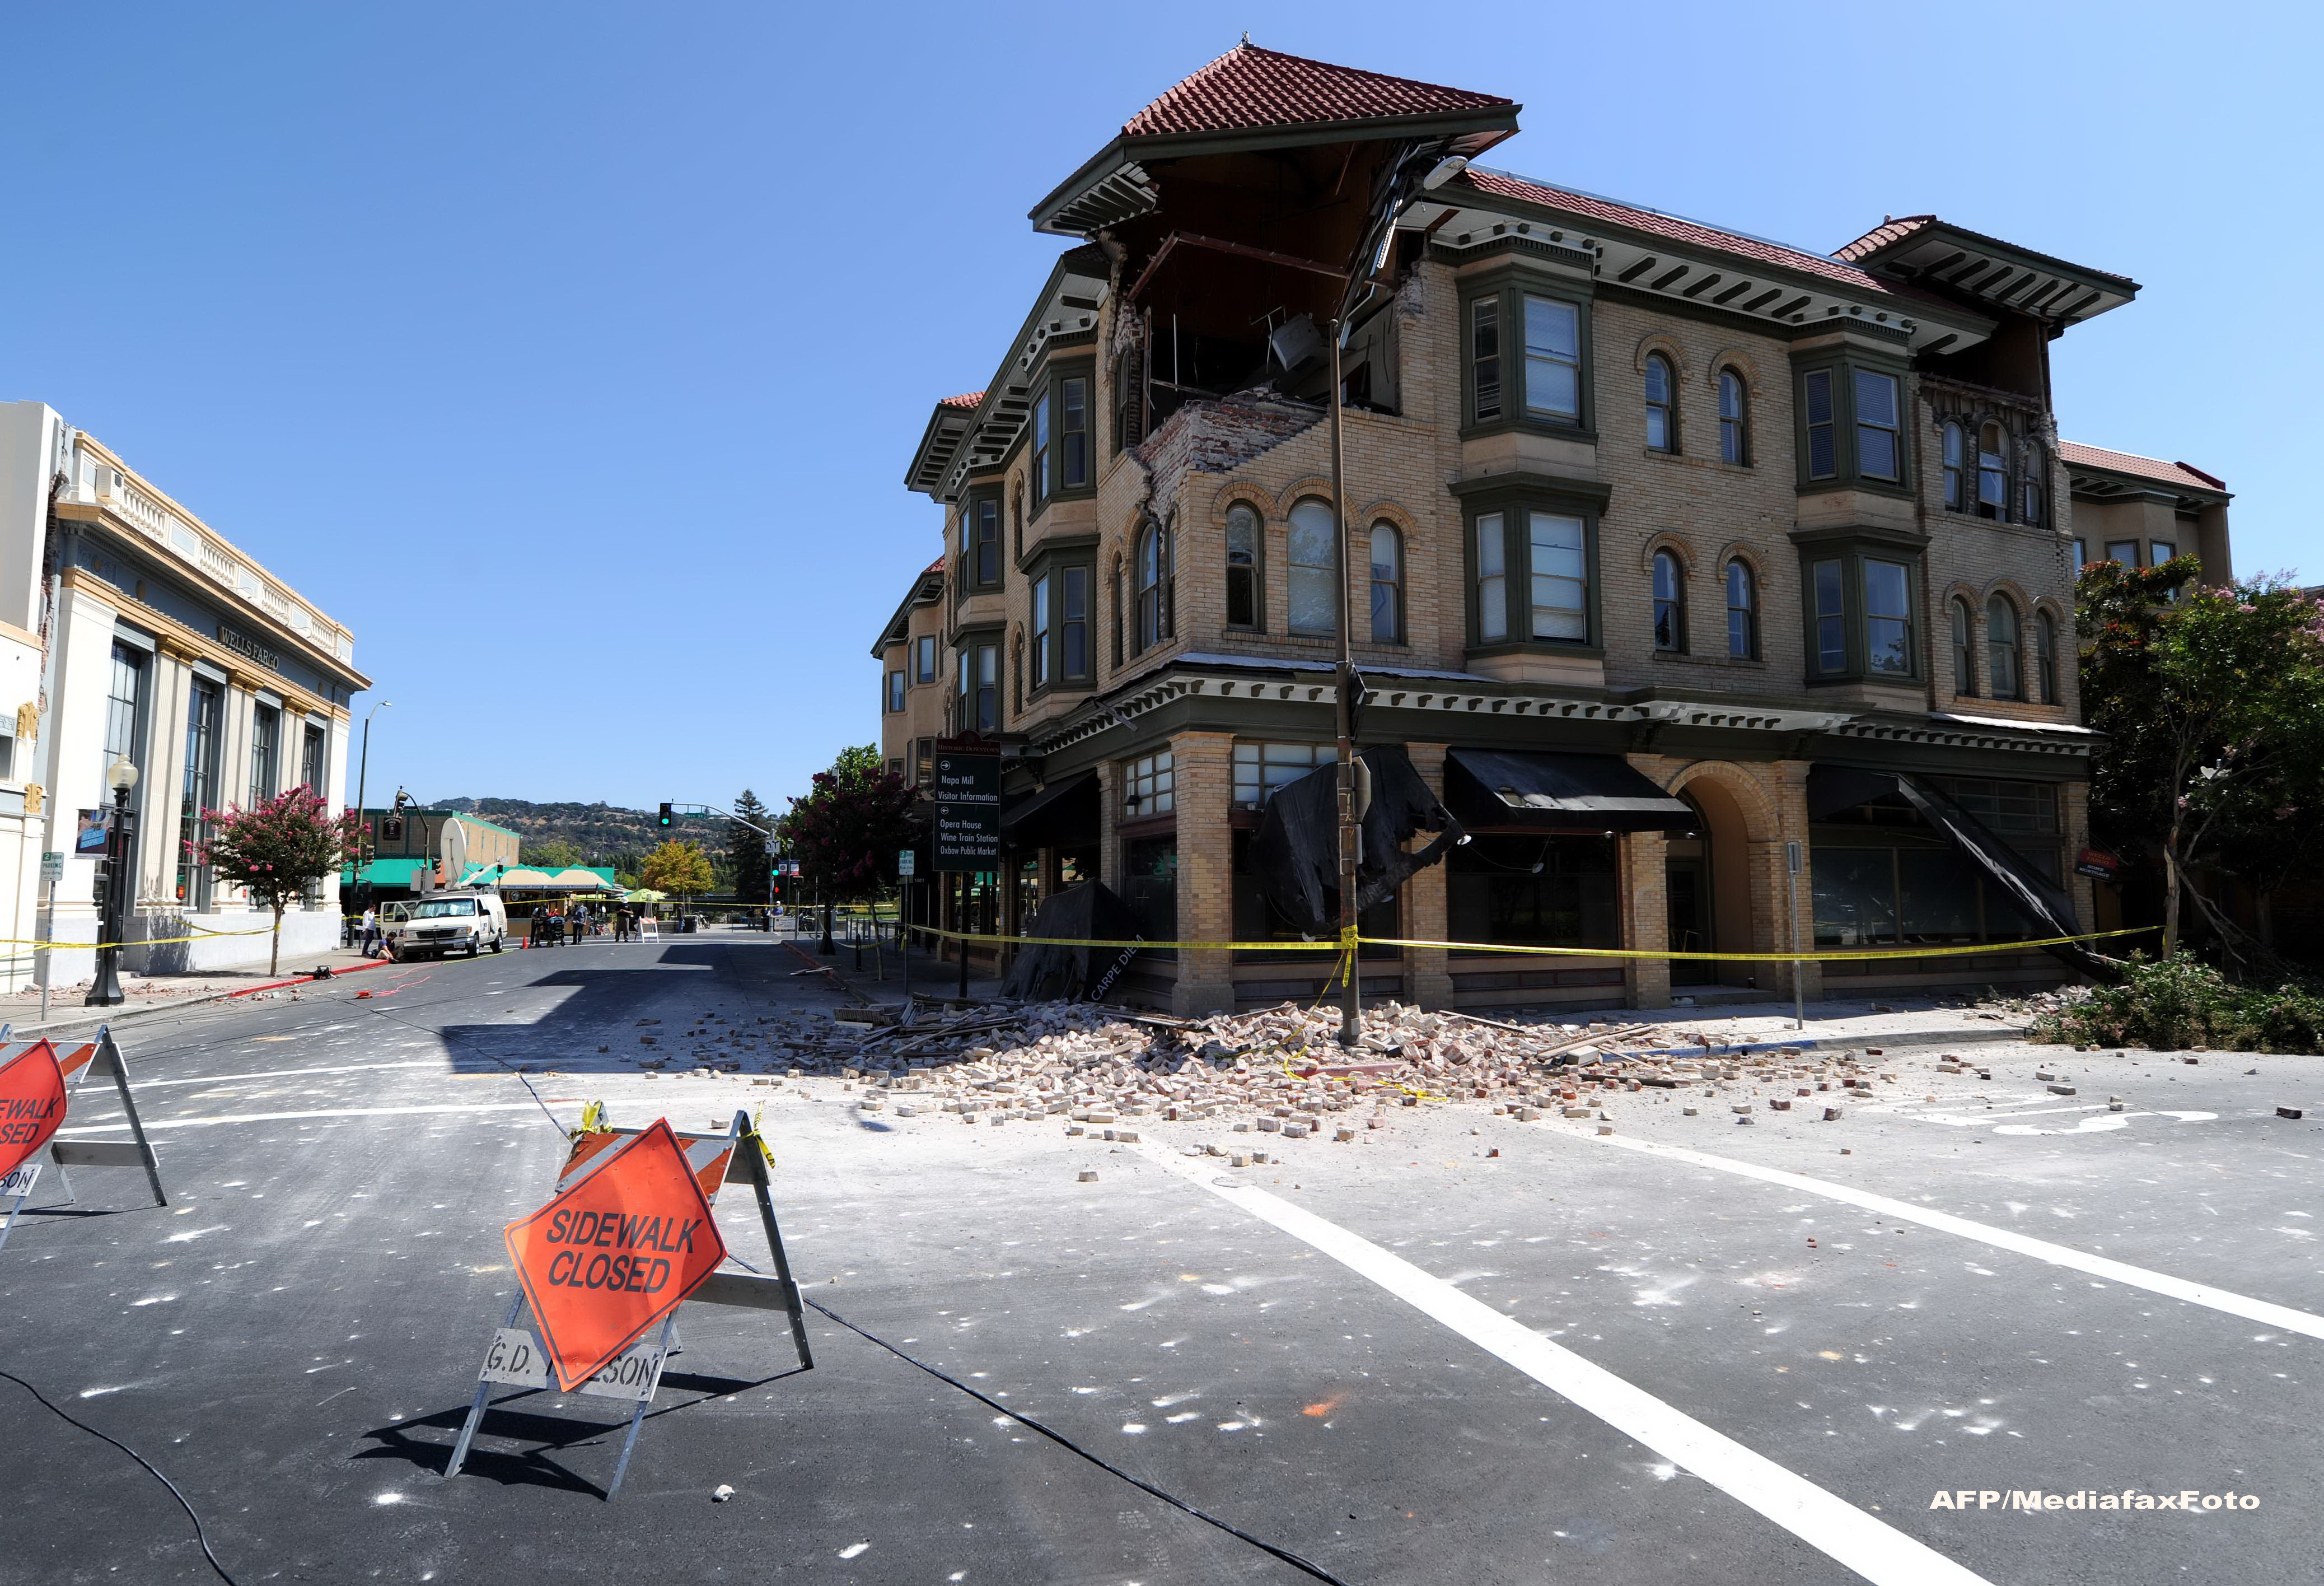 Stare de urgenta in California, dupa cel mai puternic cutremur din ultimii 25 de ani. FOTO si VIDEO - Imaginea 5